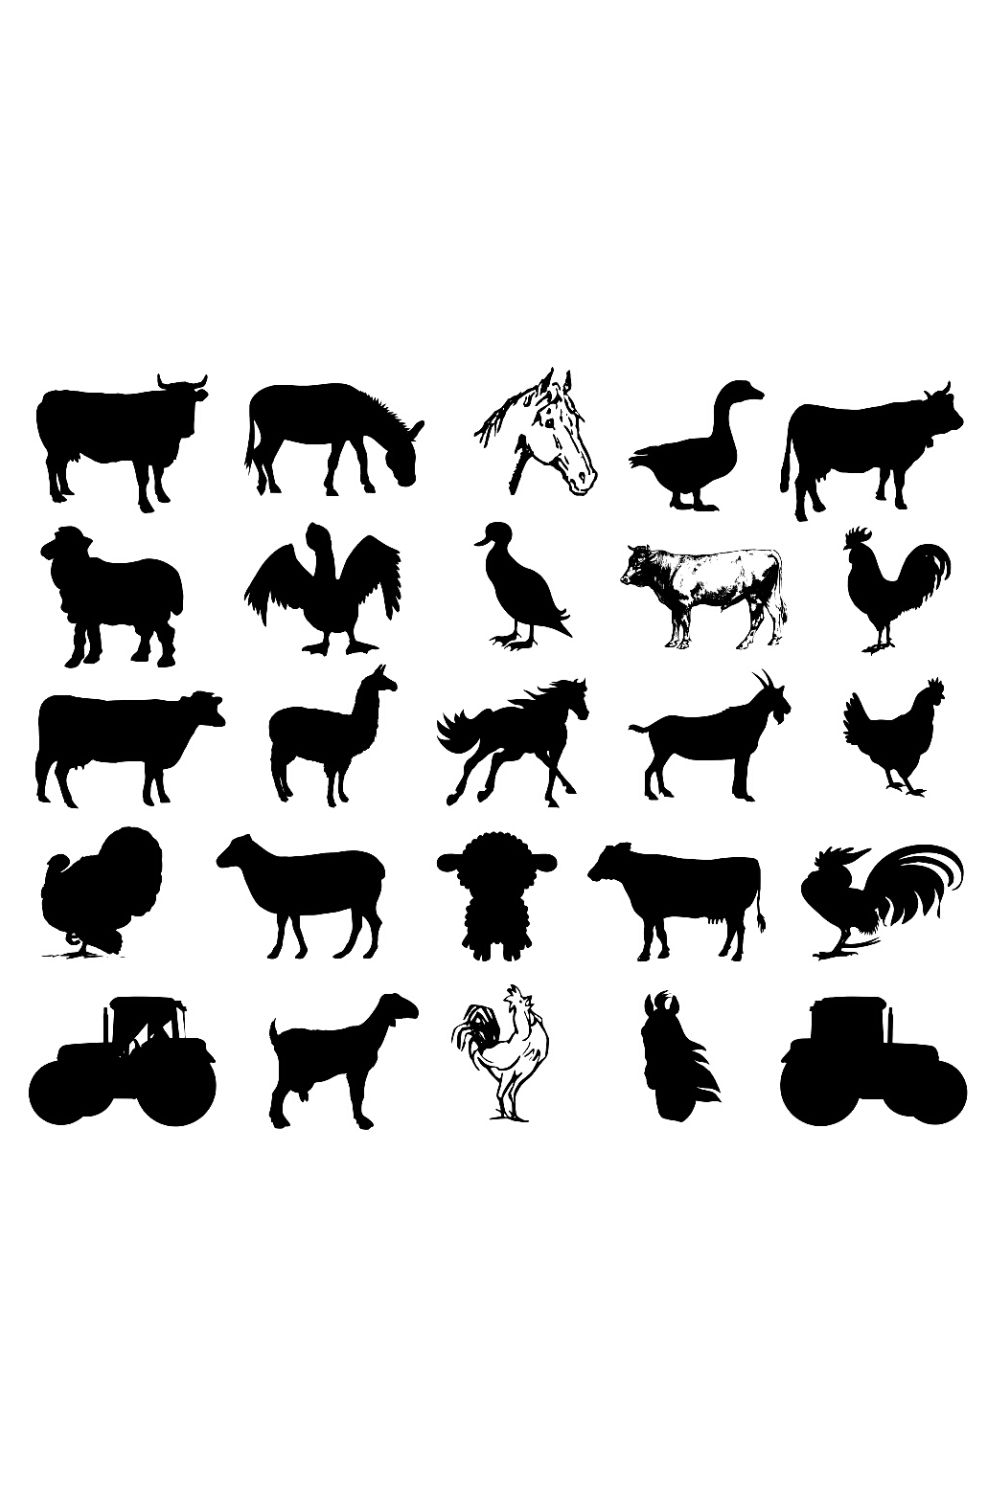 Farm Animals Silhouette Bundles pinterest image.